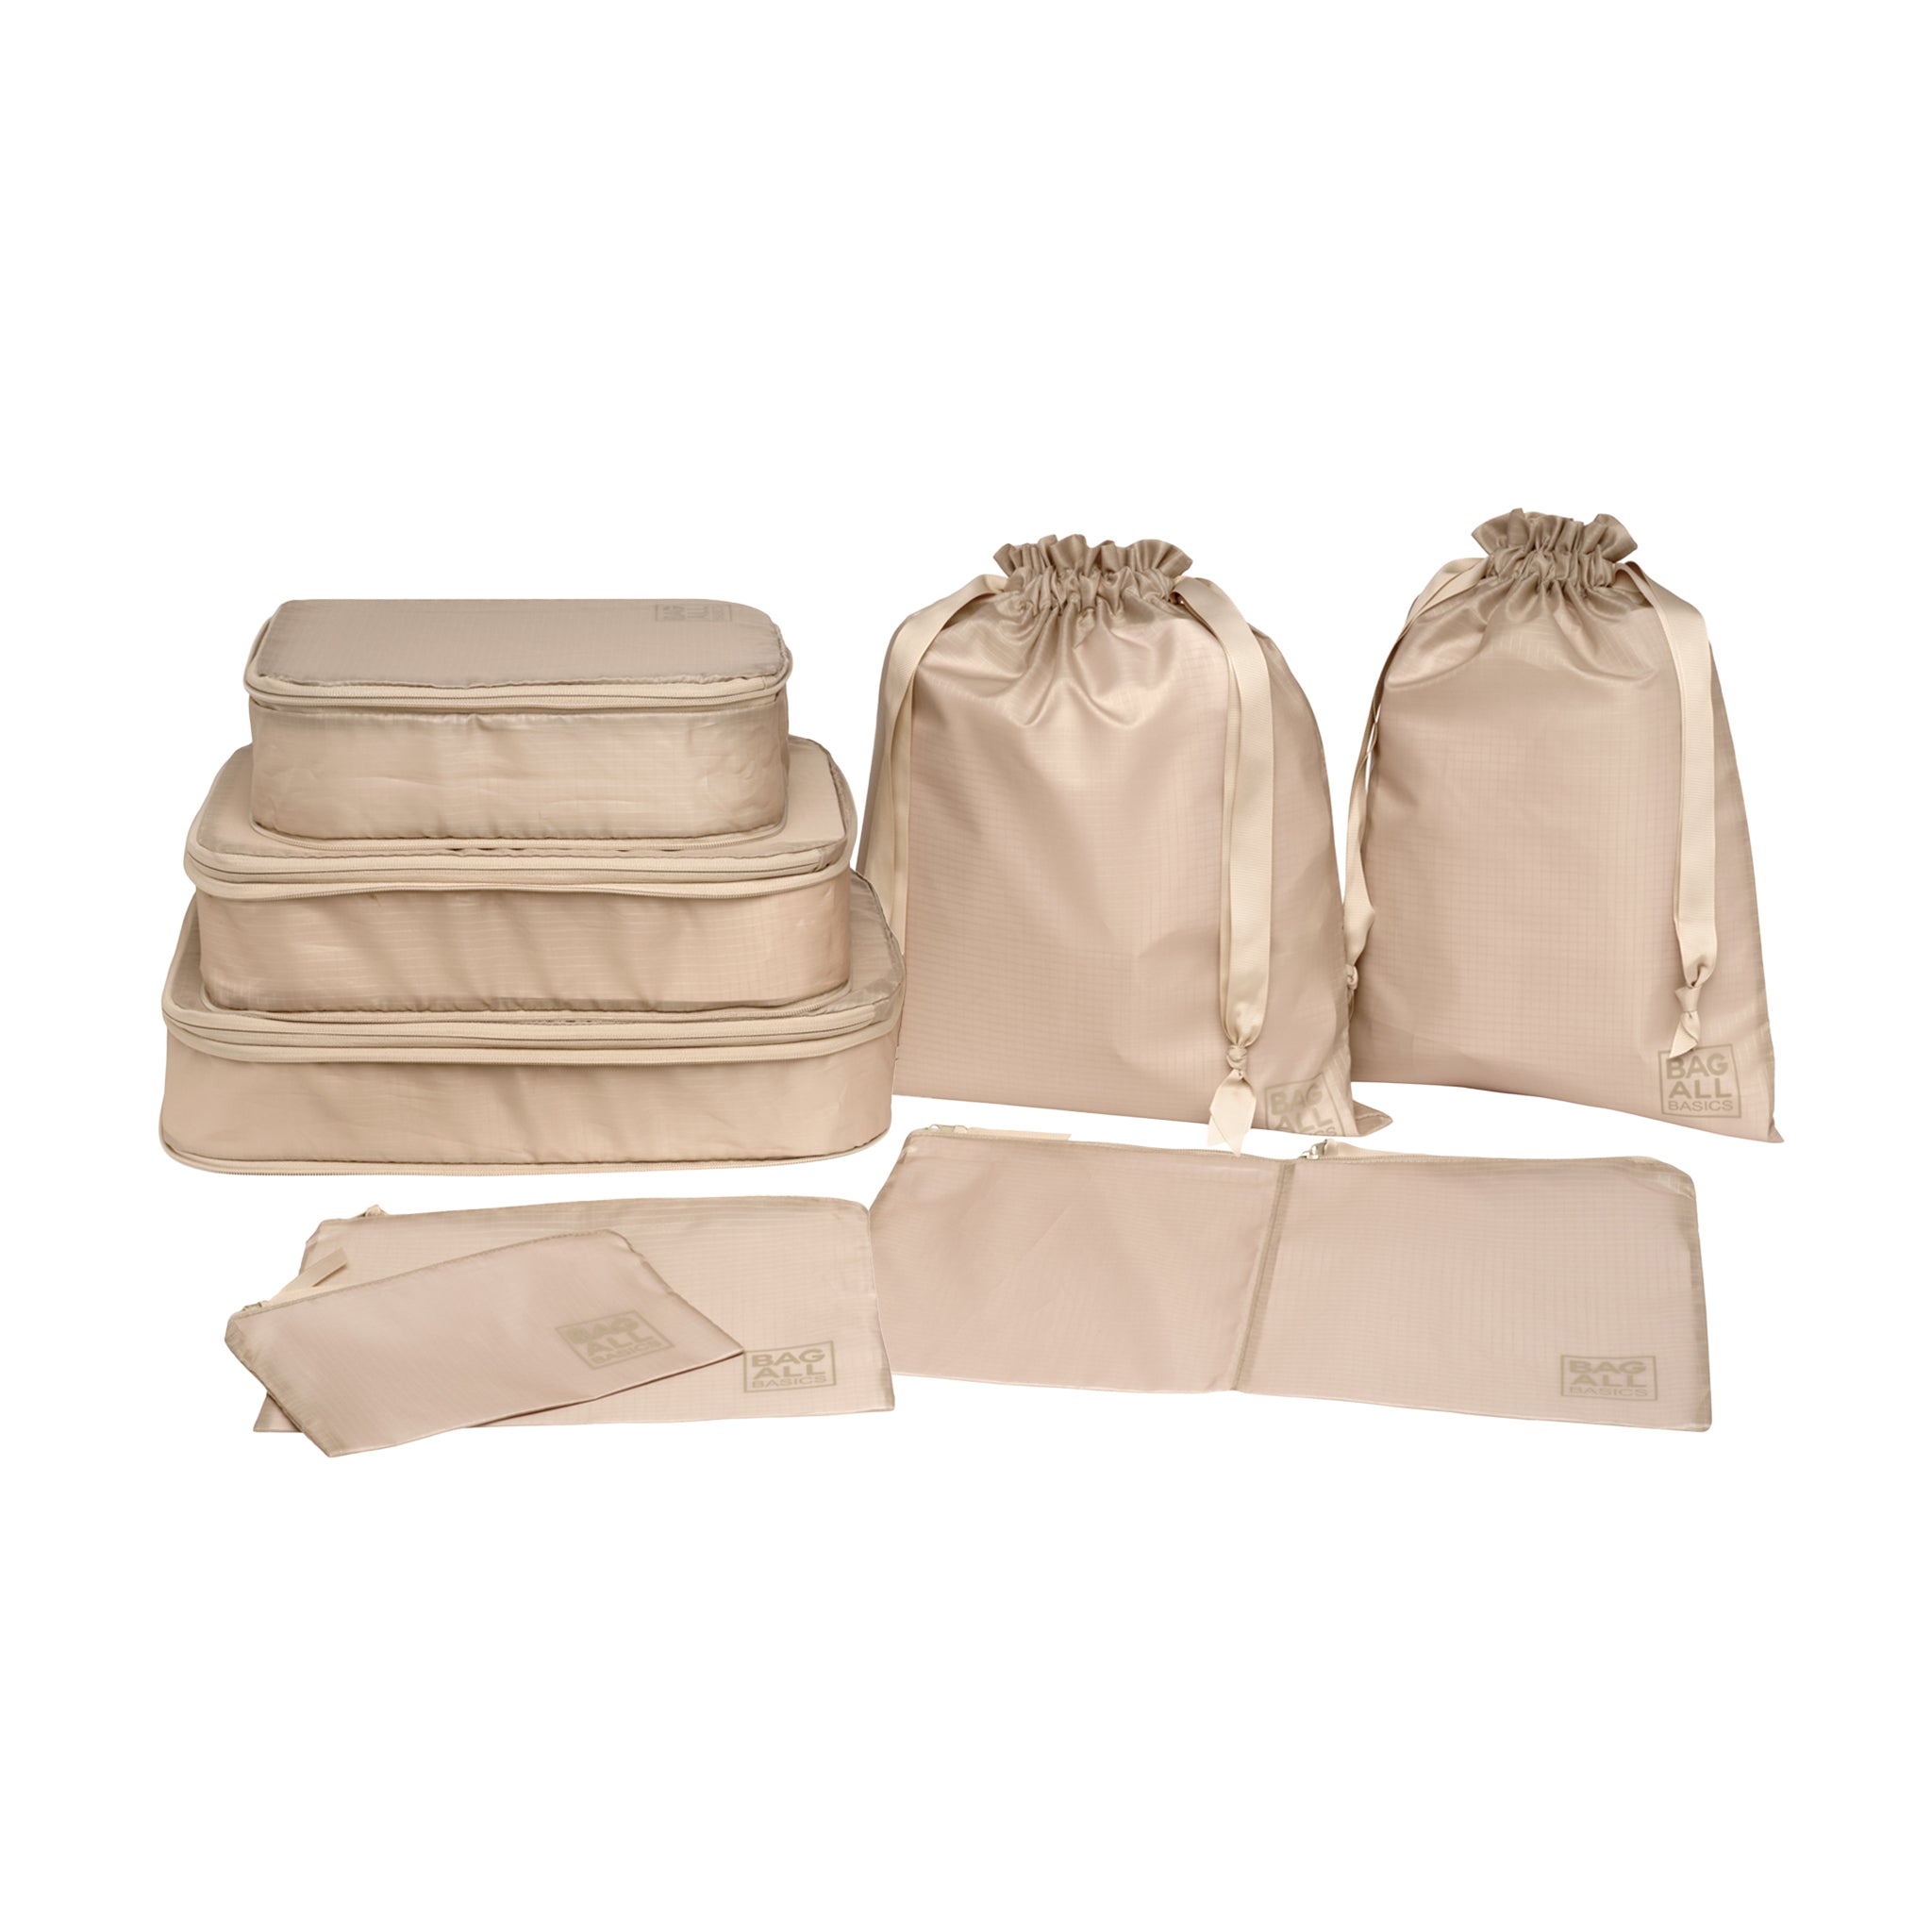 Bag-all Basic Sacs d’organisation, Taupe, Pack de 8 | Bag-all